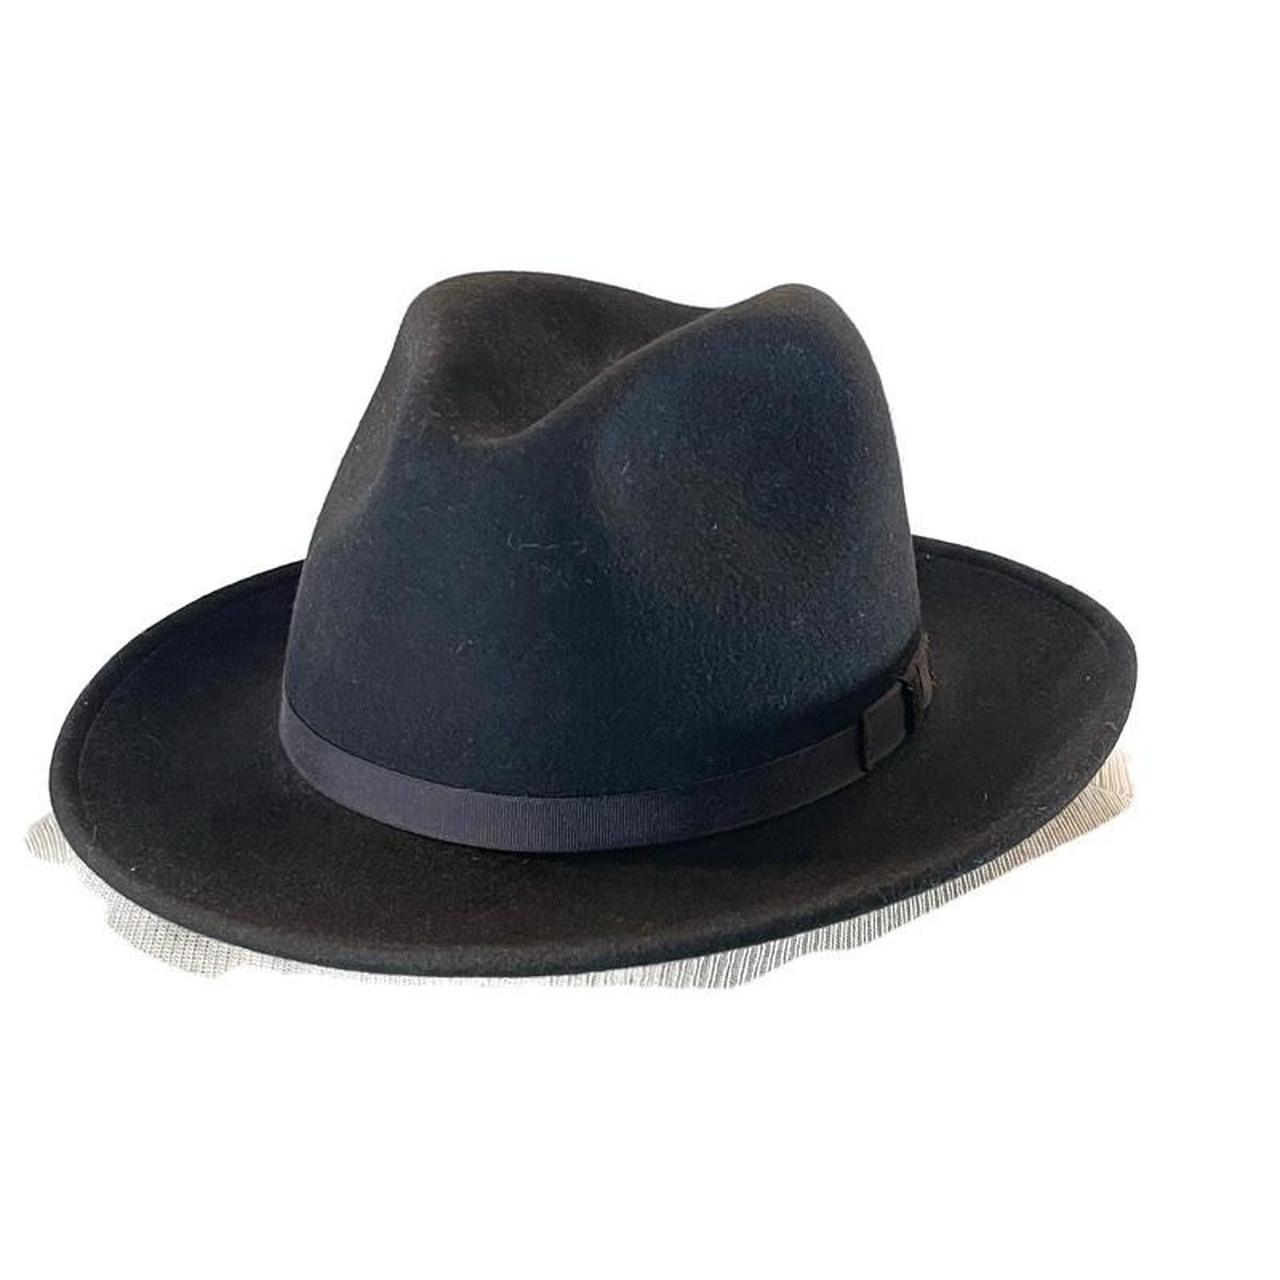 Country Gentleman Men's Black Hat